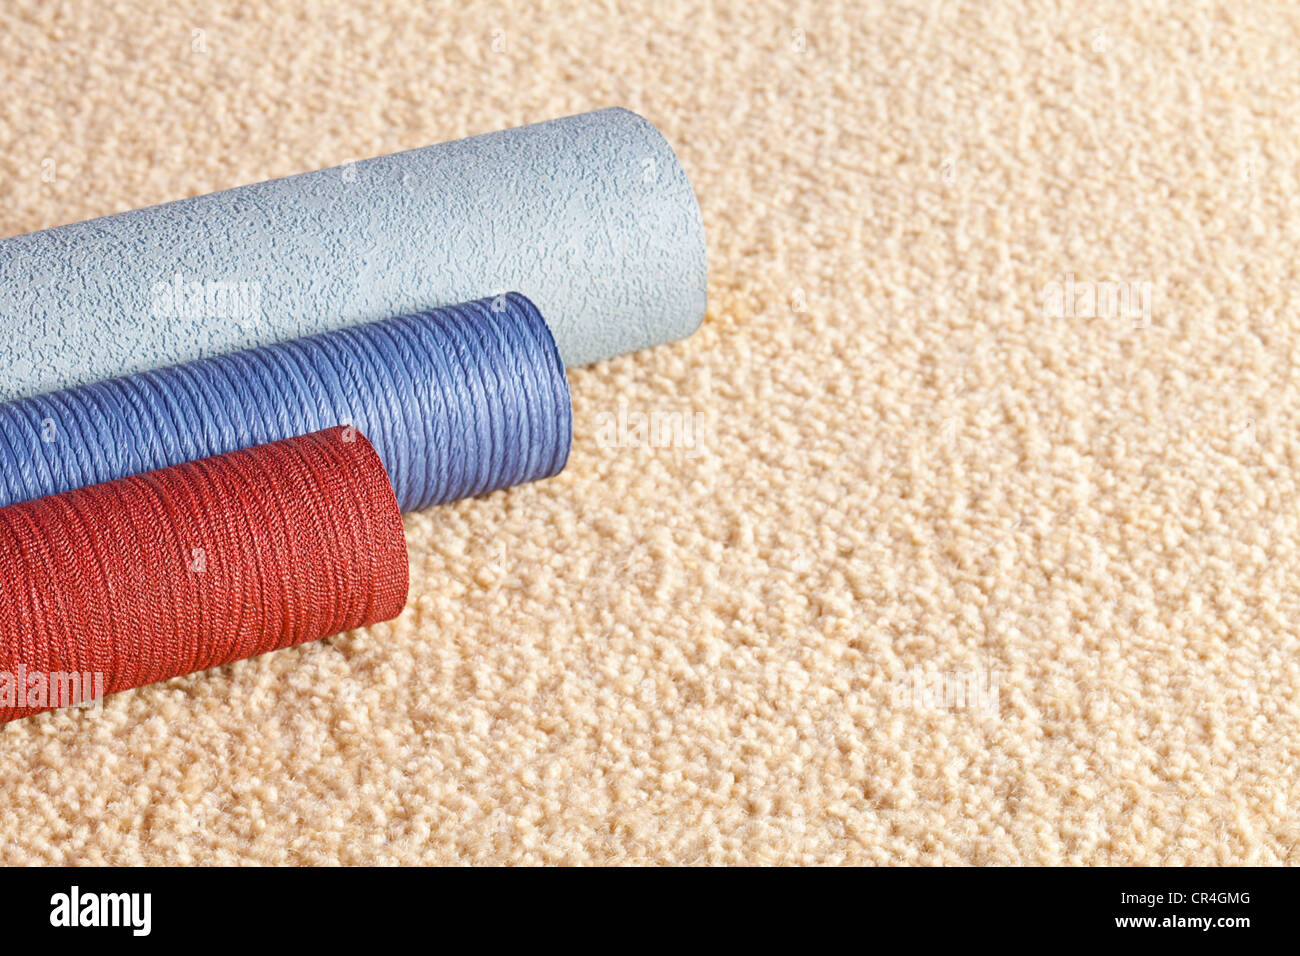 Muestra rollos de papel tapiz en una alfombra de color claro, con espacio de copia. Foto de stock